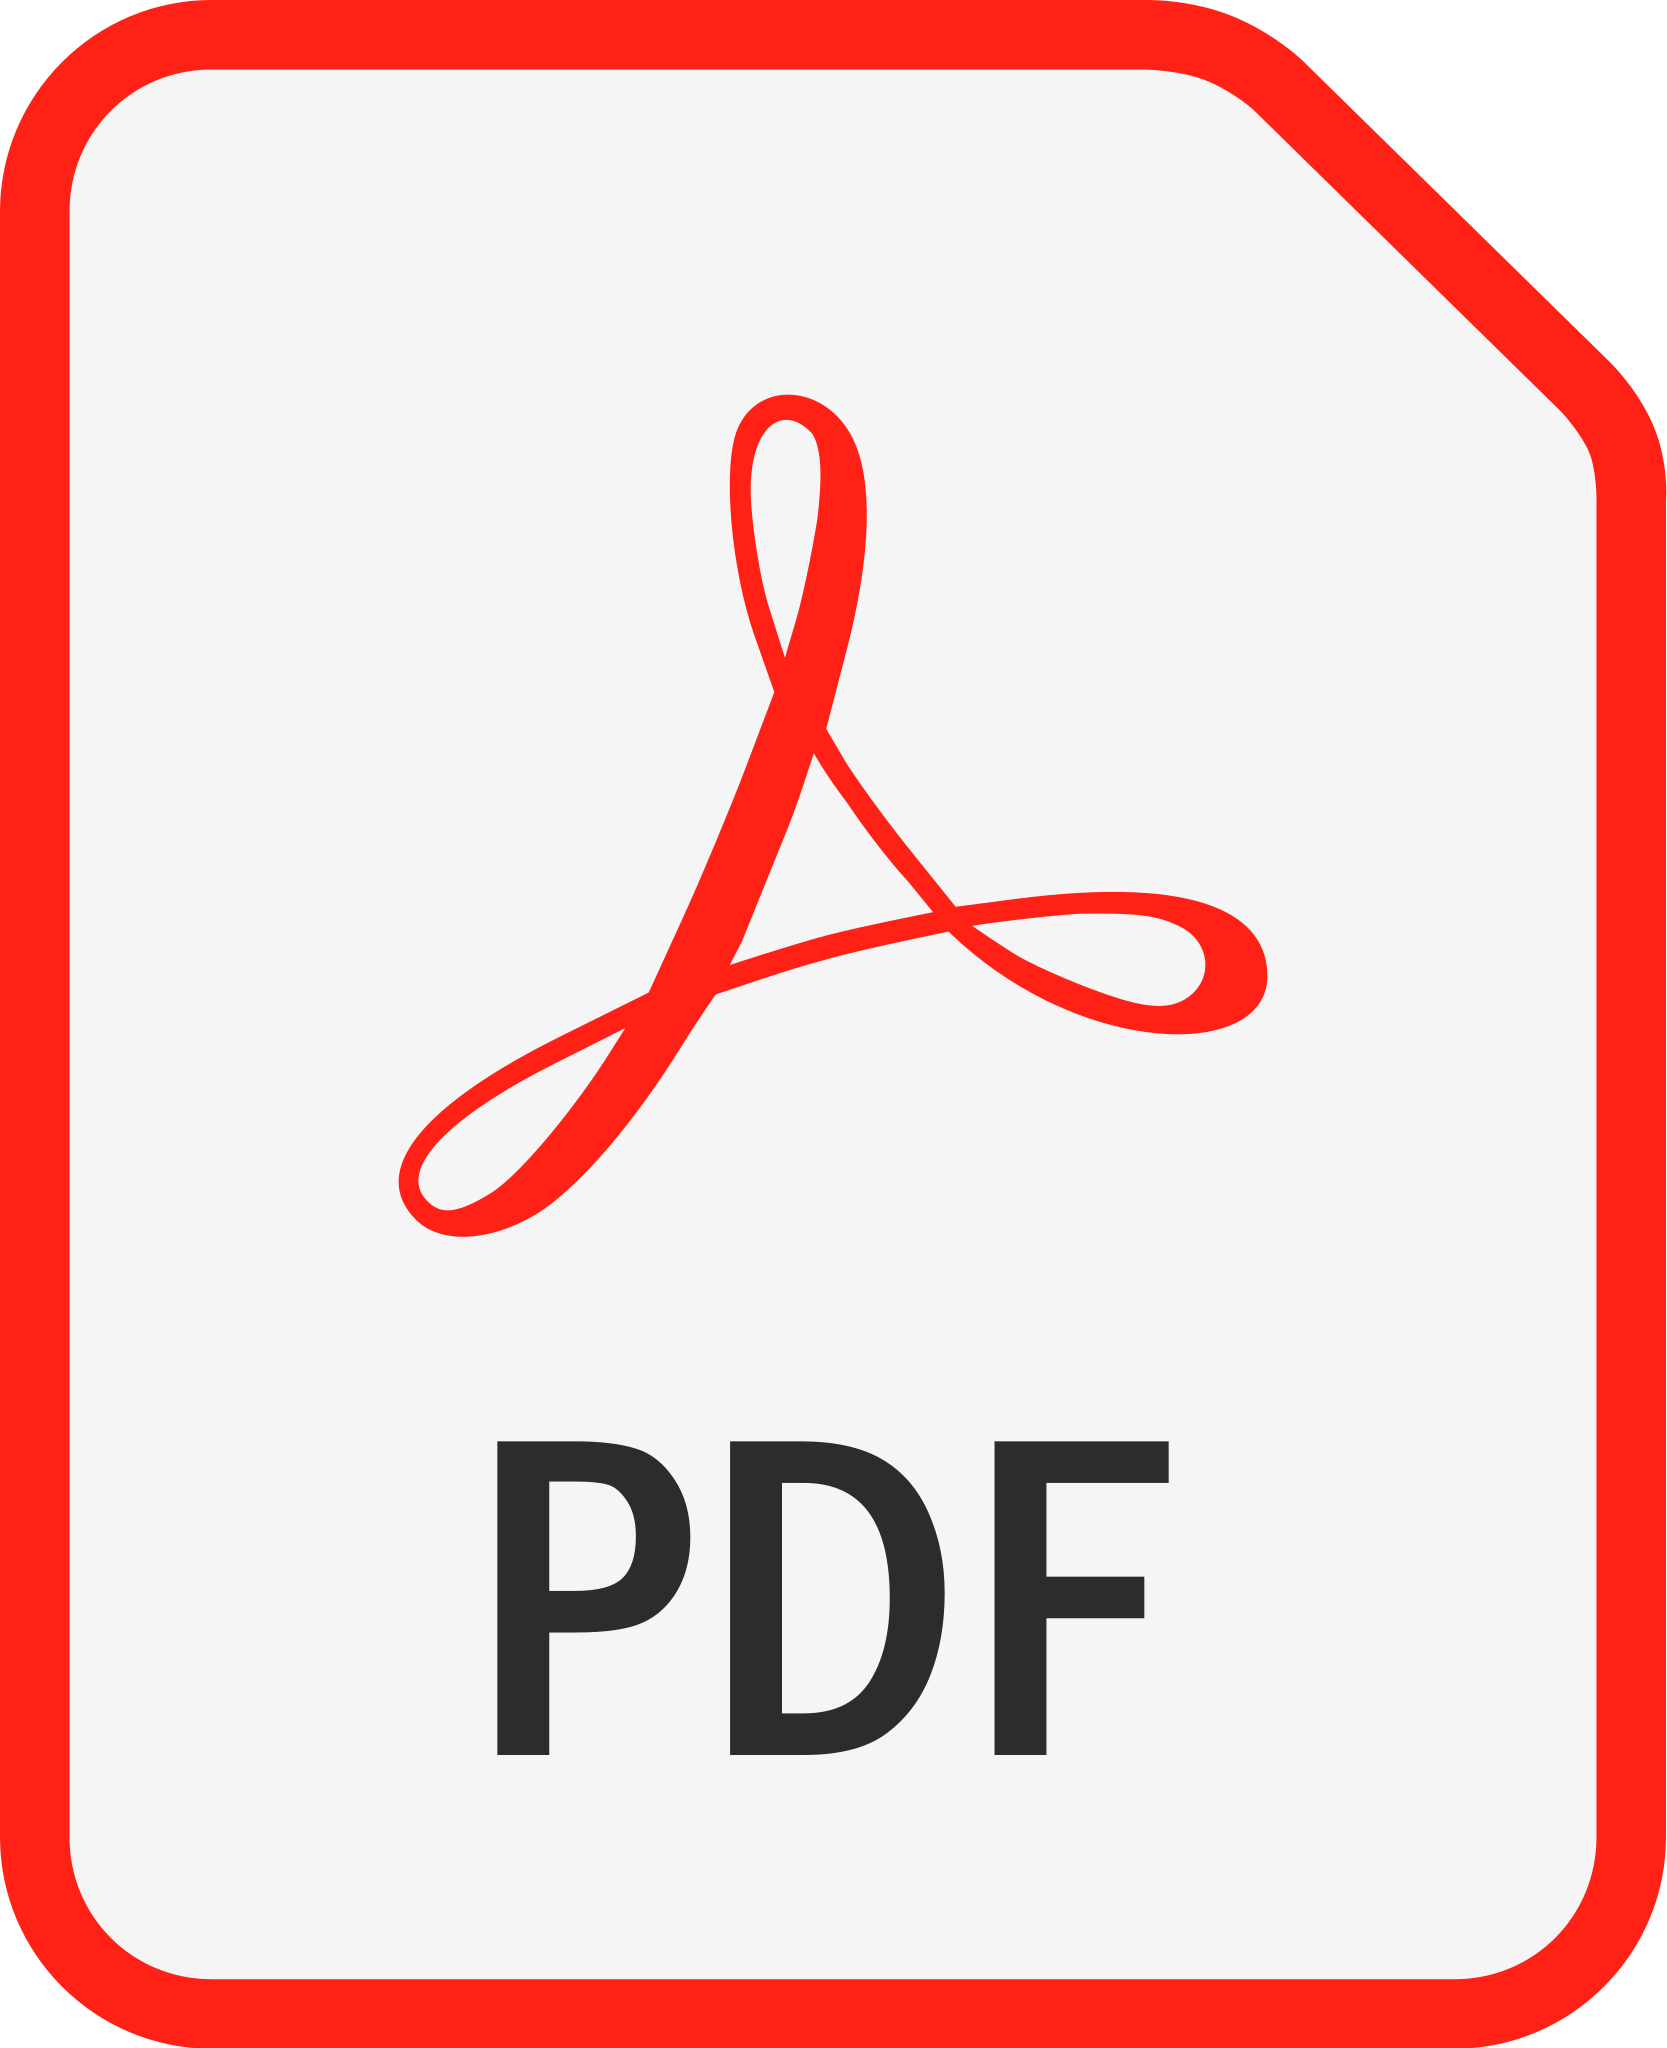 PDF_file_icon.svg.png (86 KB)